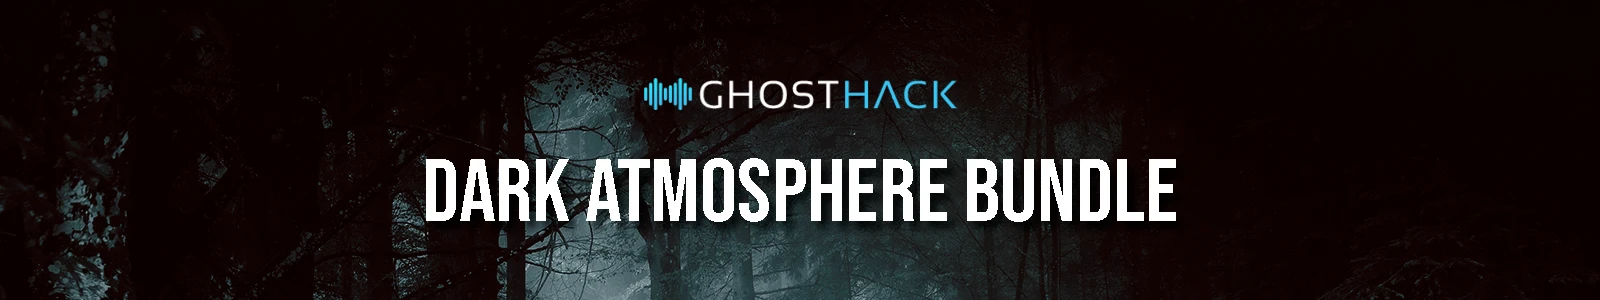 Ghosthack Dark Atmosphere Bundle